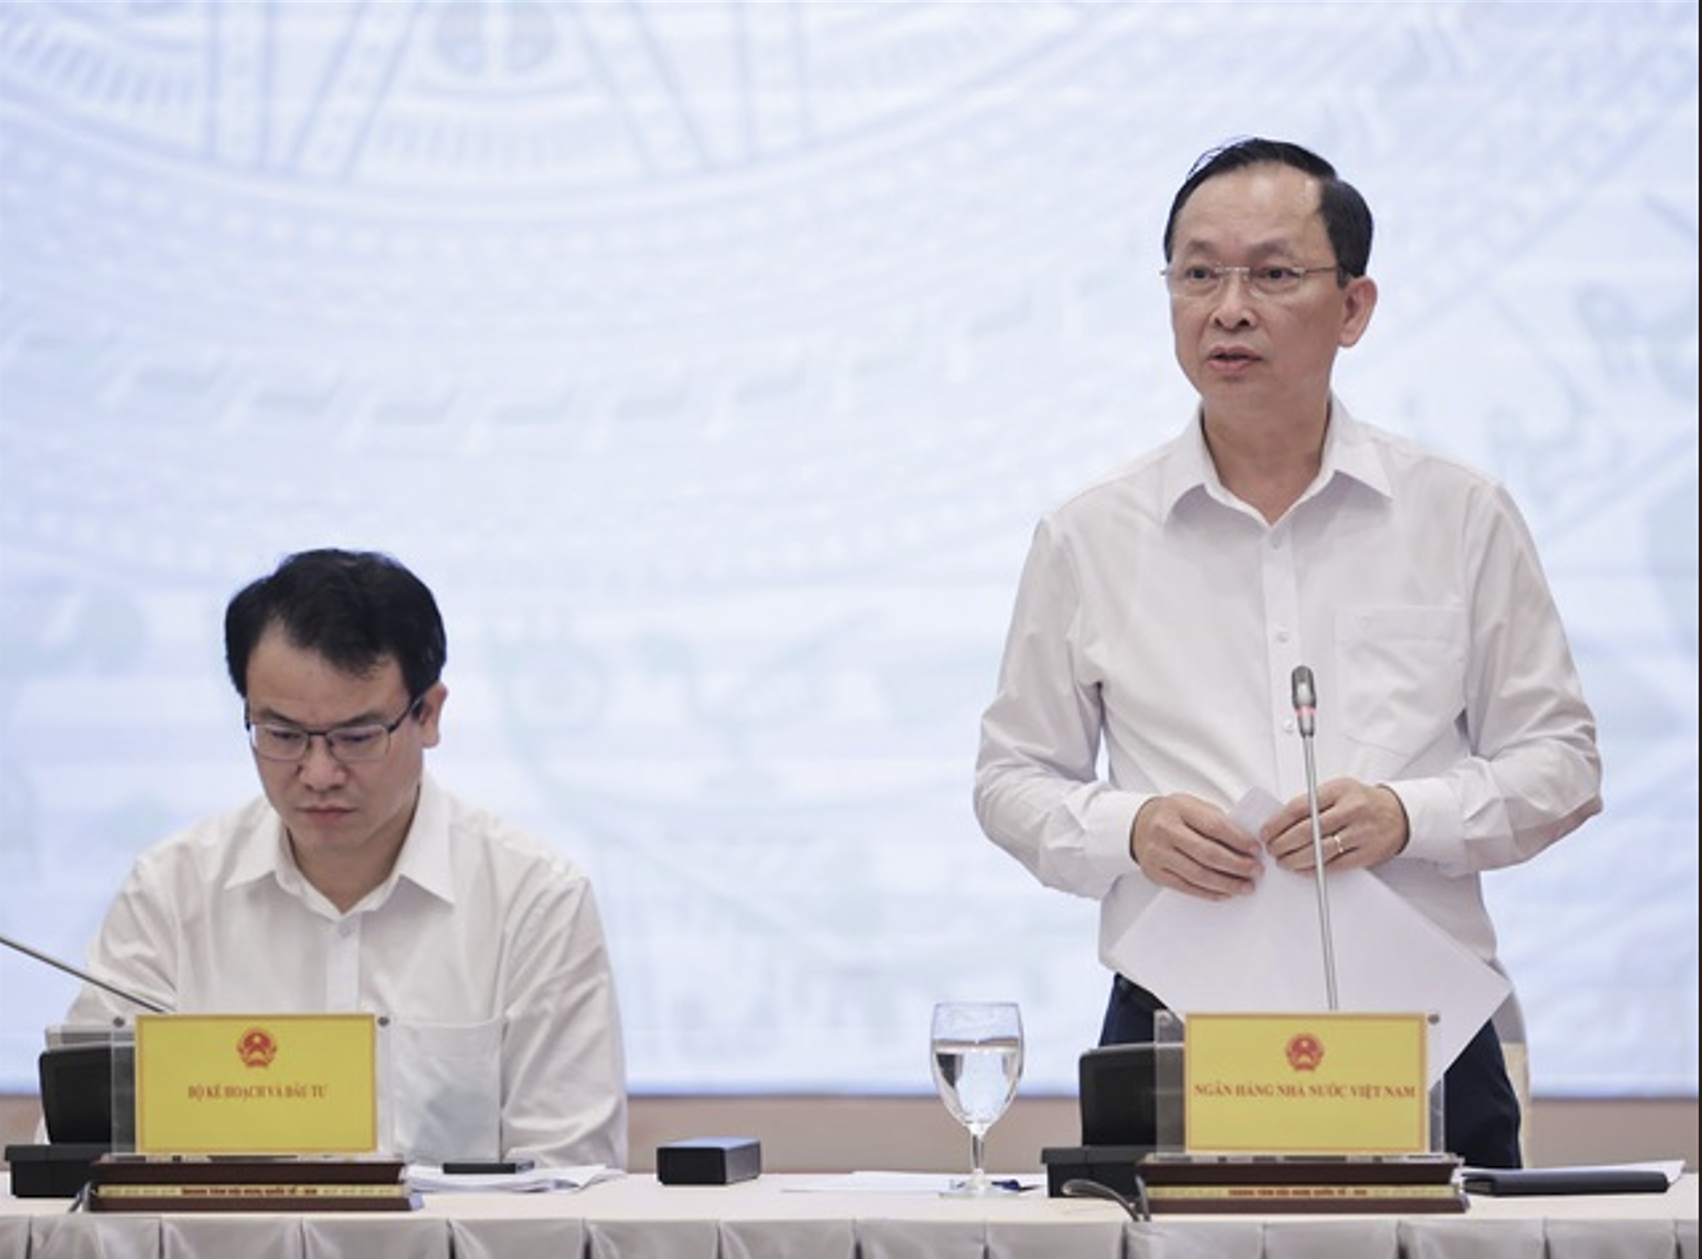 Phó Thống đốc Đào Minh Tú: Lãi suất đã giảm vượt kỳ vọng đặt ra từ đầu năm